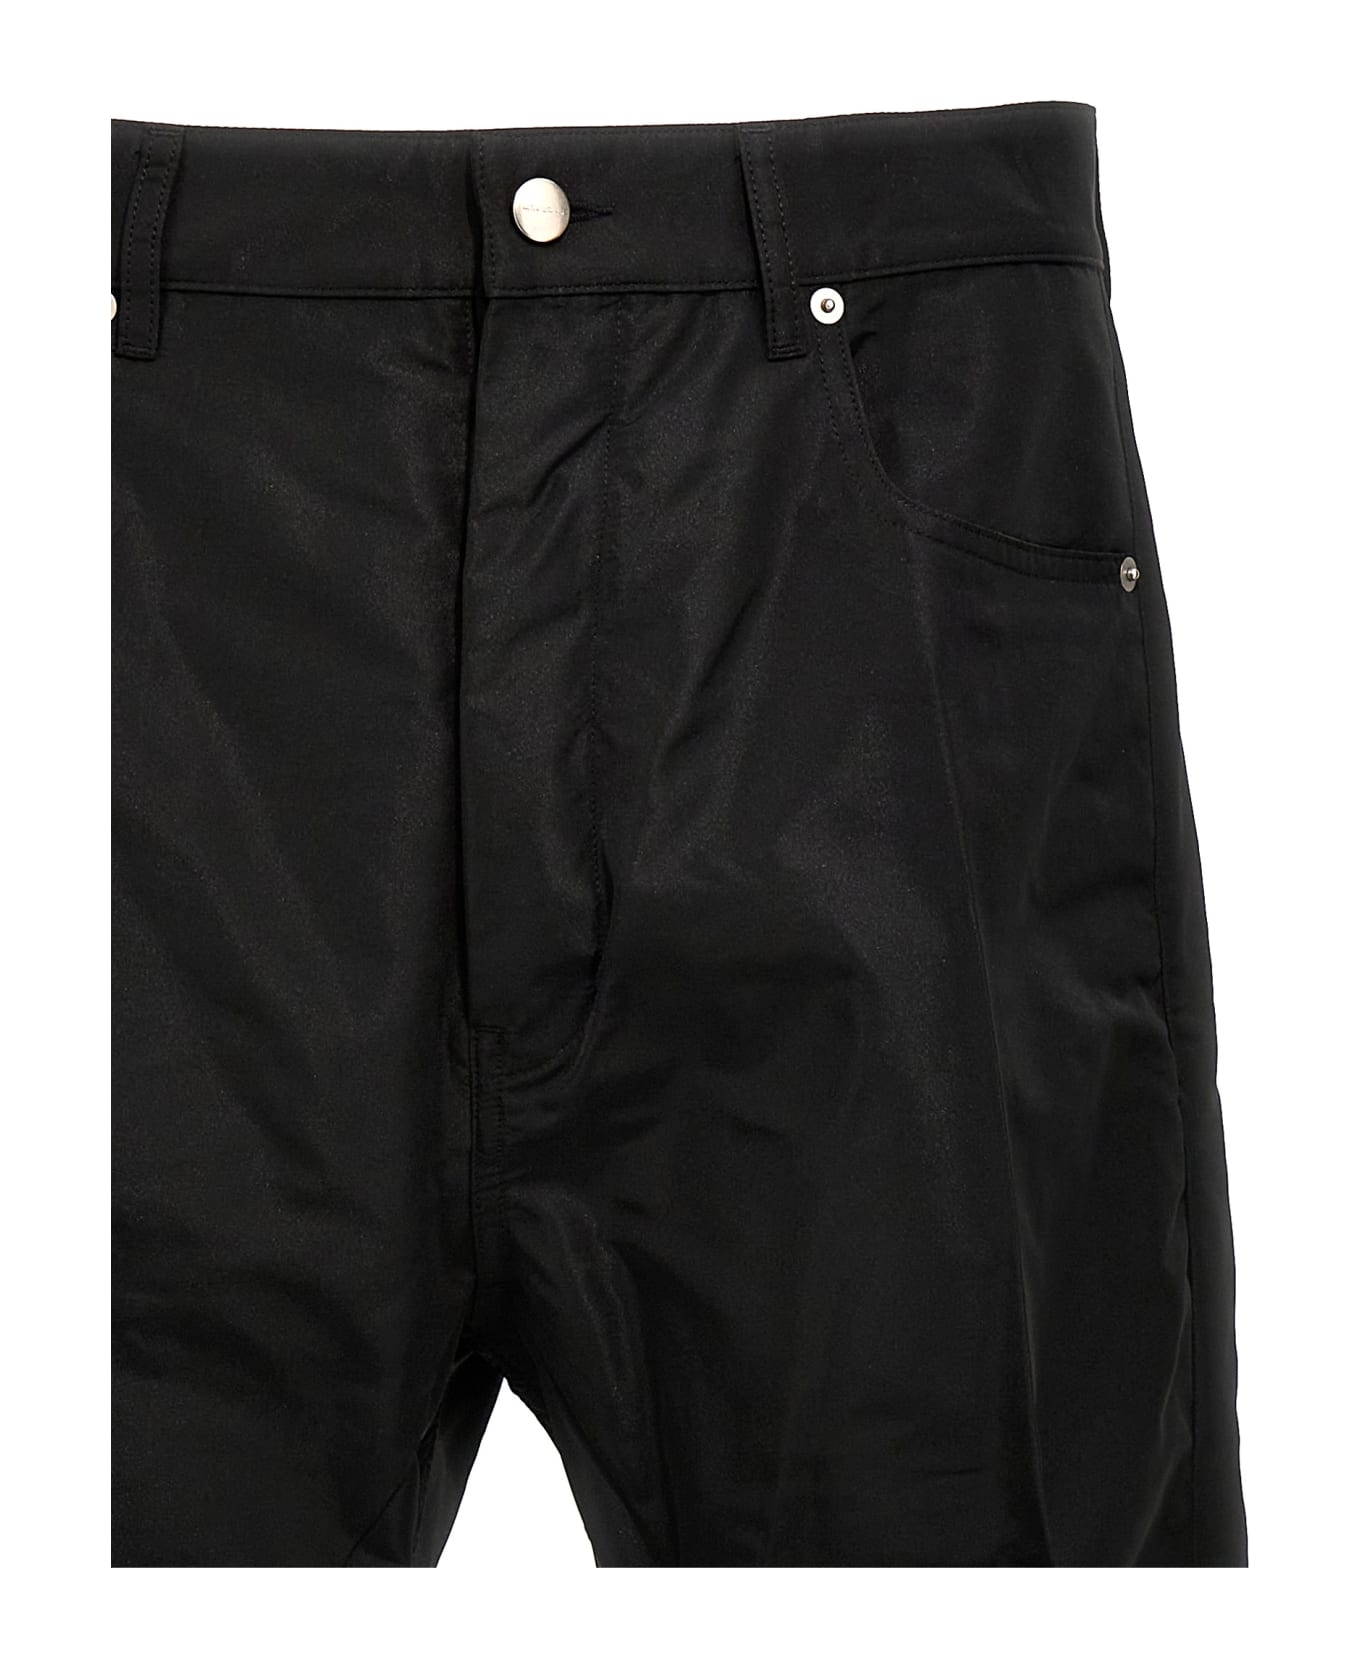 Rick Owens 'geth Jeans' Pants - Black